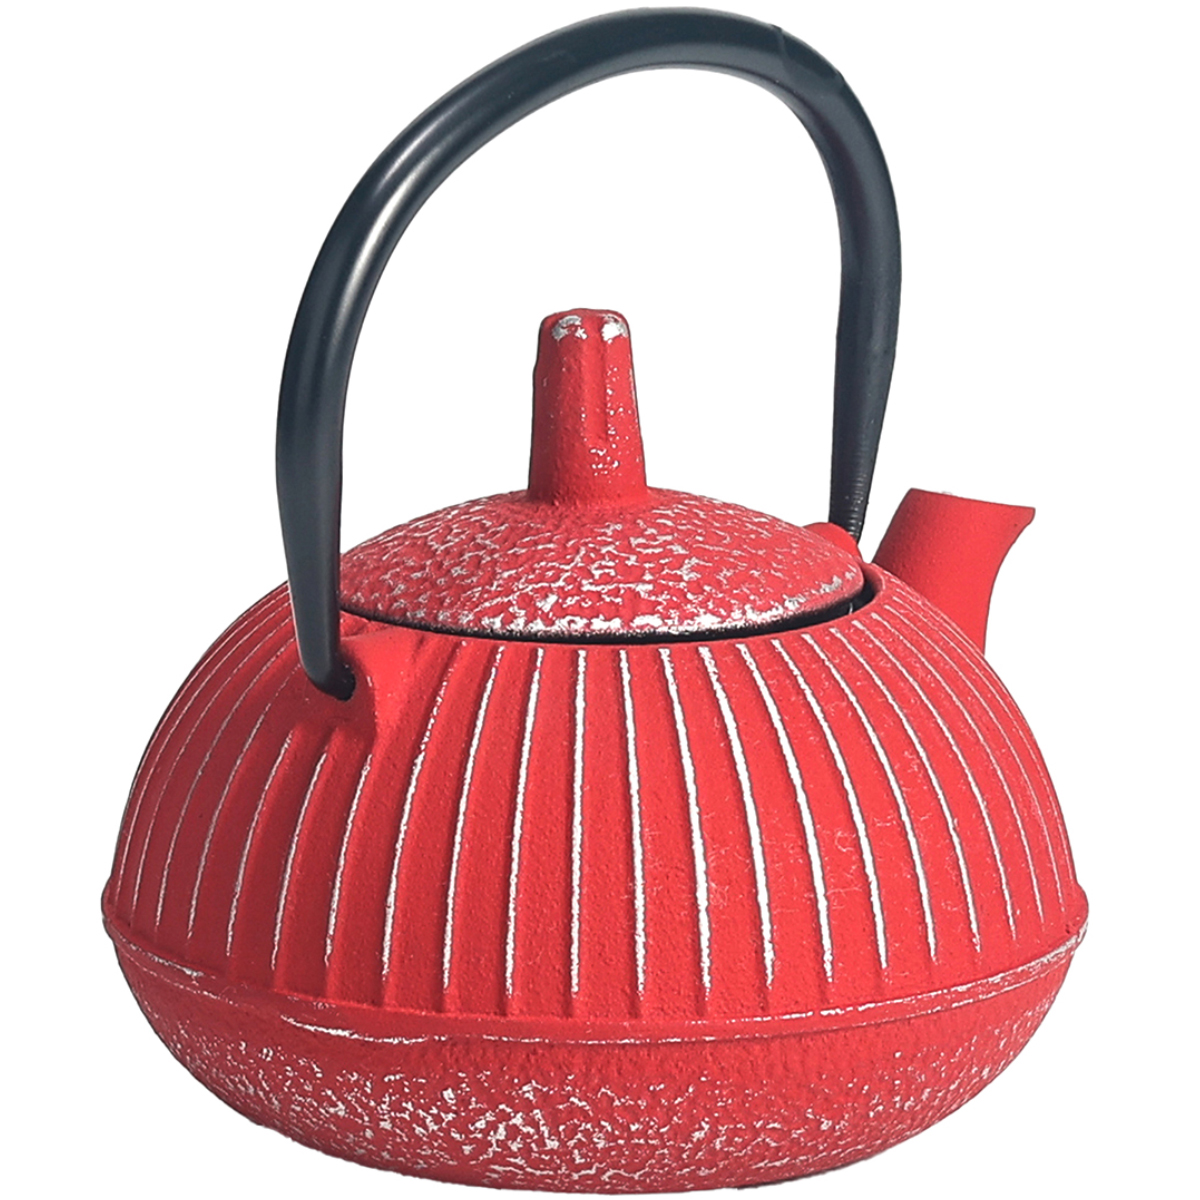 Japanese style cast iron teapot 0.3 liter